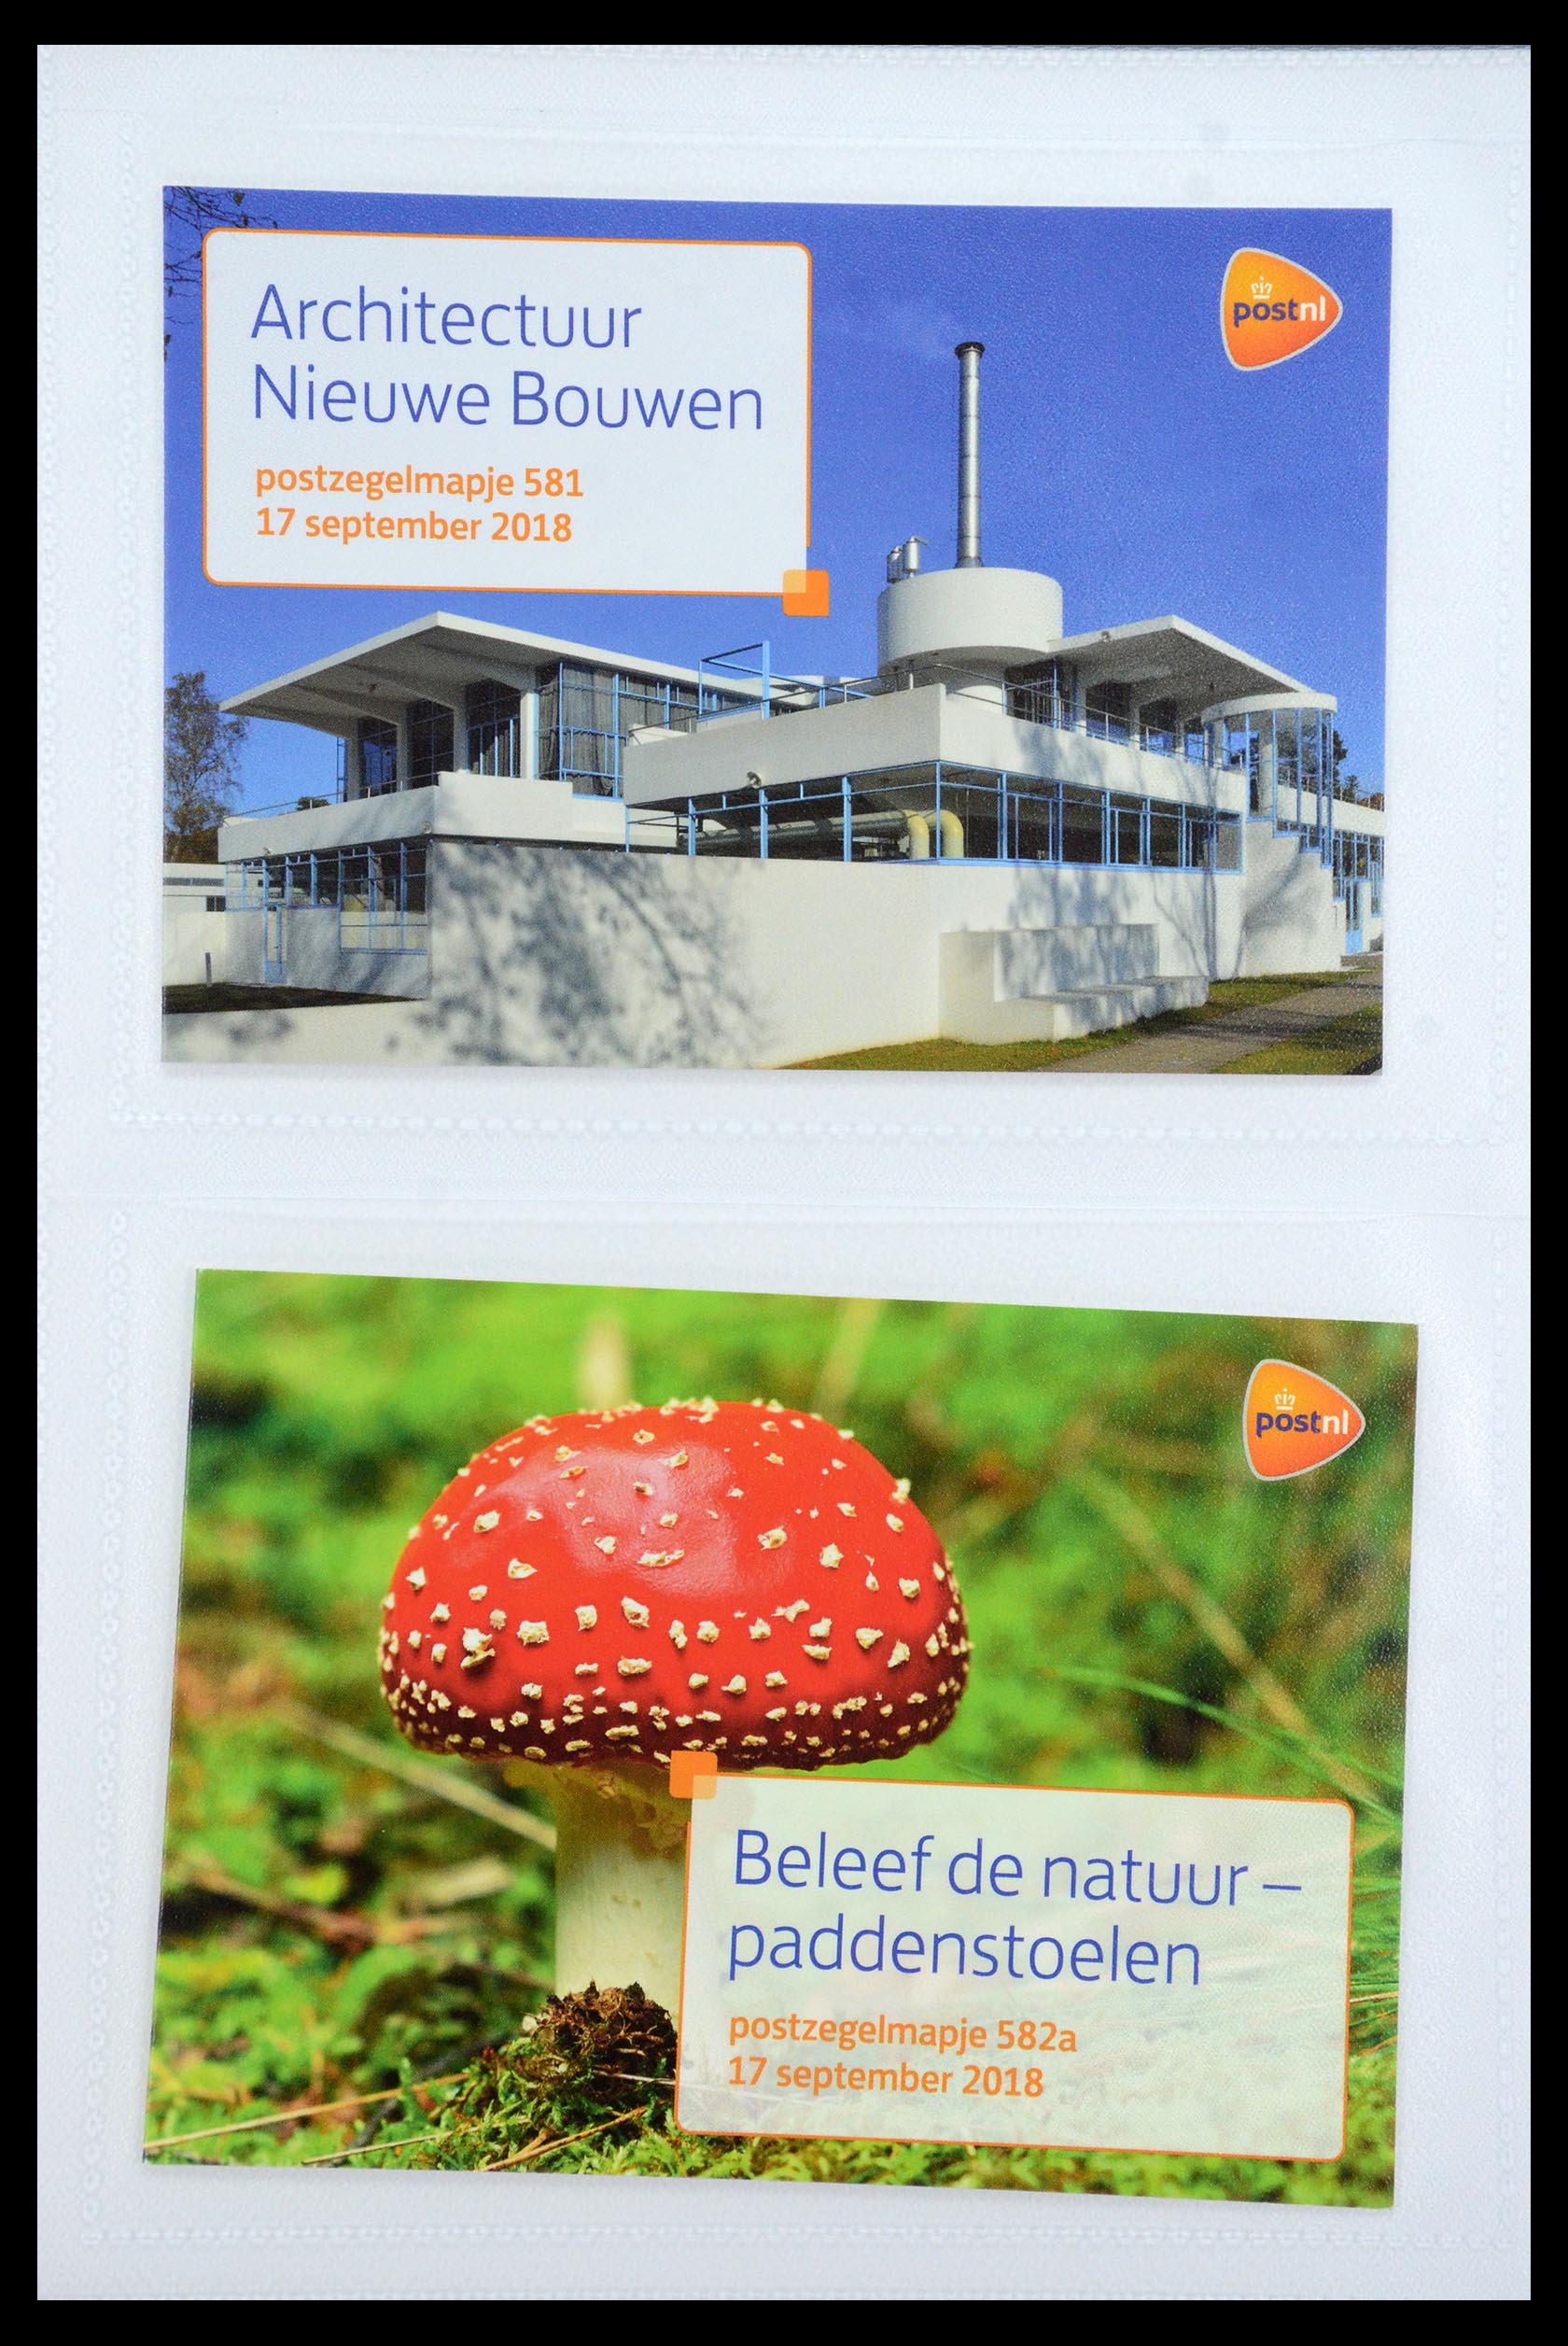 35947 351 - Stamp Collection 35947 Netherlands PTT presentation packs 1982-2019!